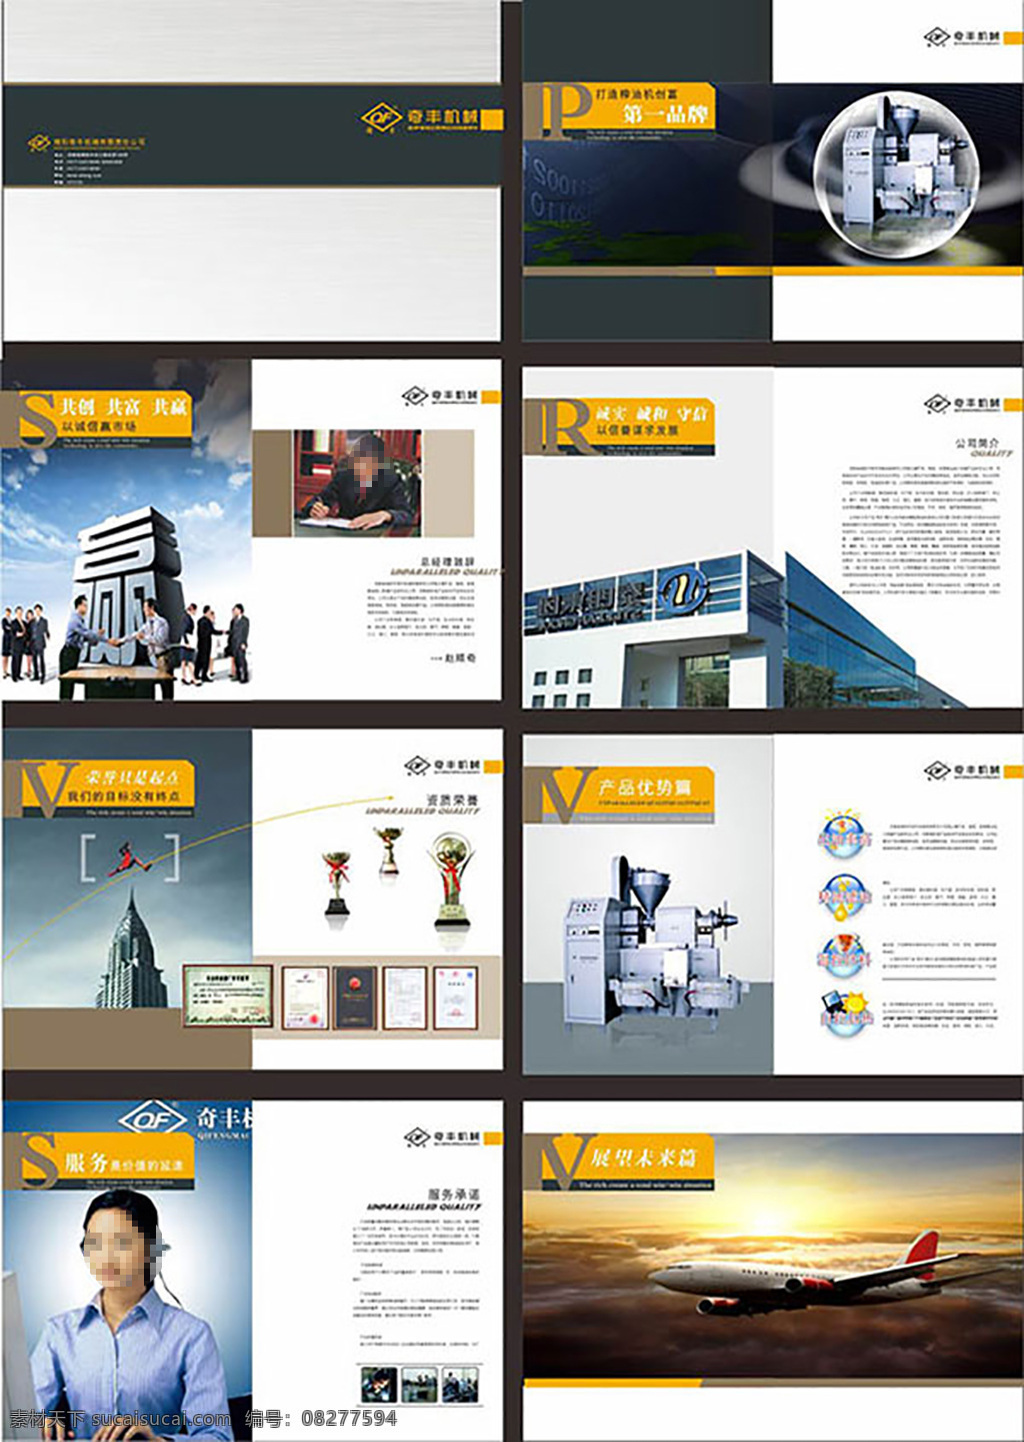 机械公司画册 企业画册 画册设计 画册模板 机械企业画册 品牌形象 品牌设计 宣传册设计 画册设计模板 宣传画册设计 画册封面设计 画册 白色